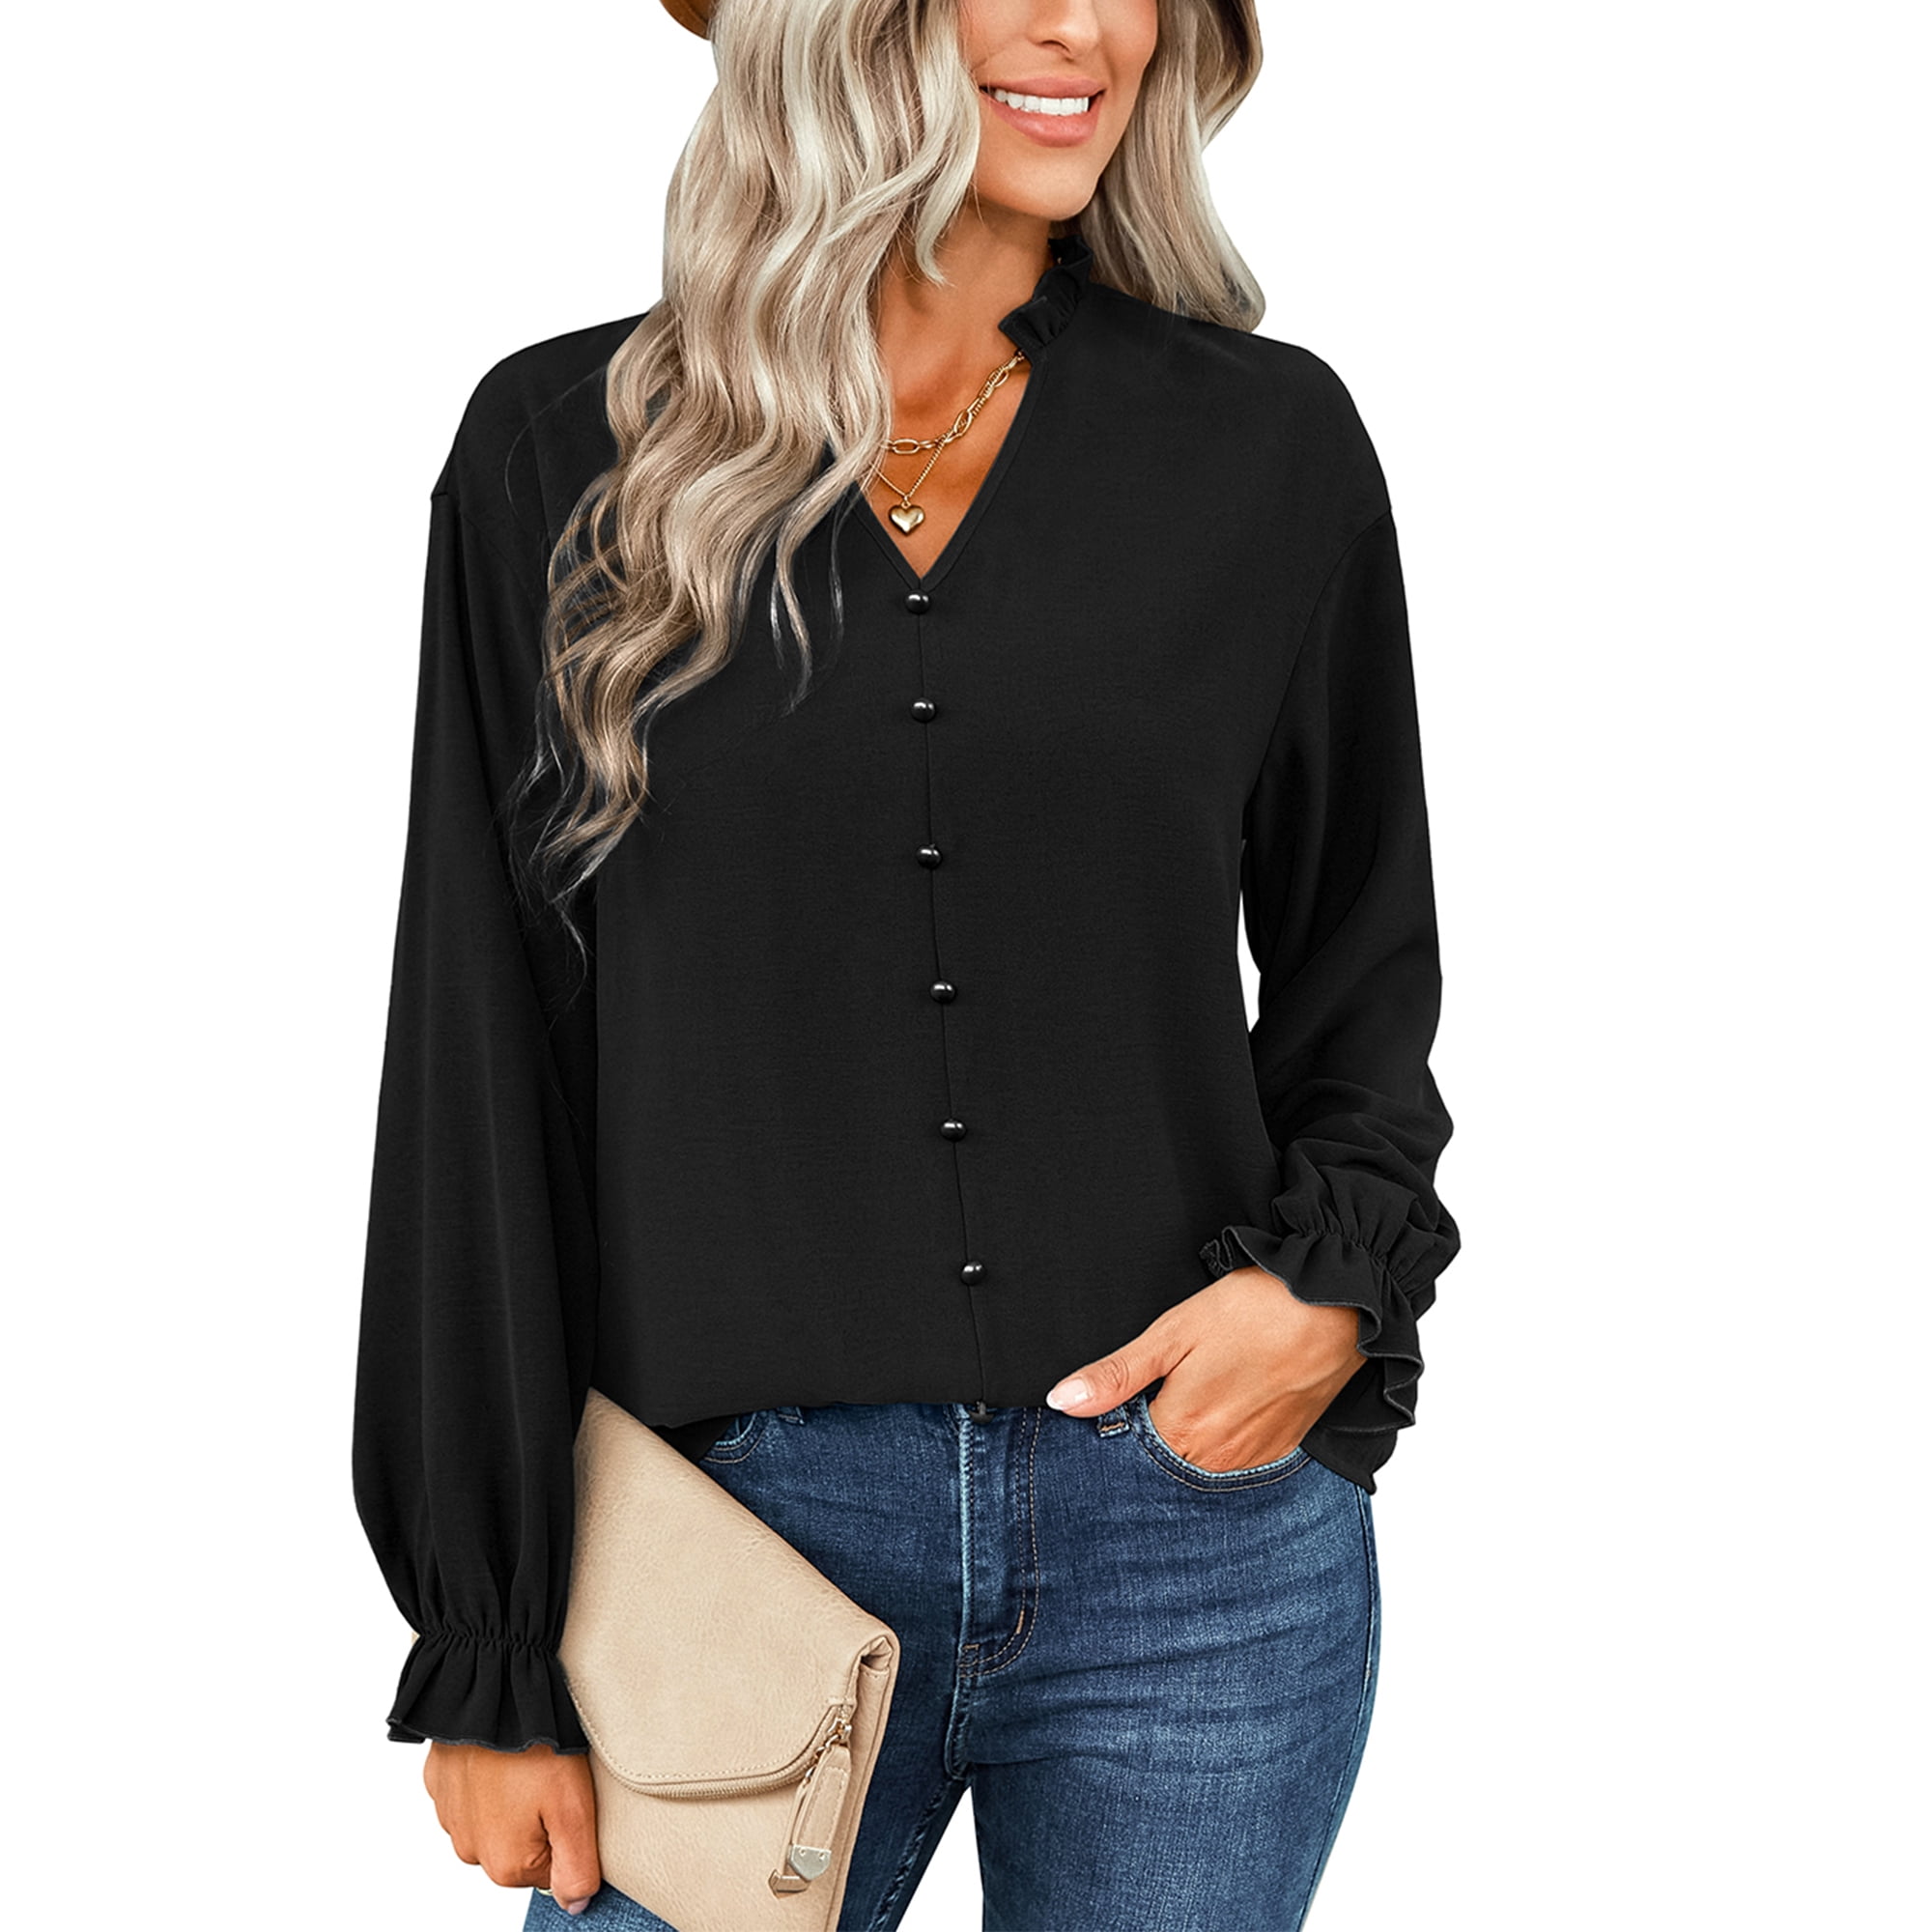 SWQZVT Women's Tops Long Sleeve Button Decoration Solid Color Shirt V ...